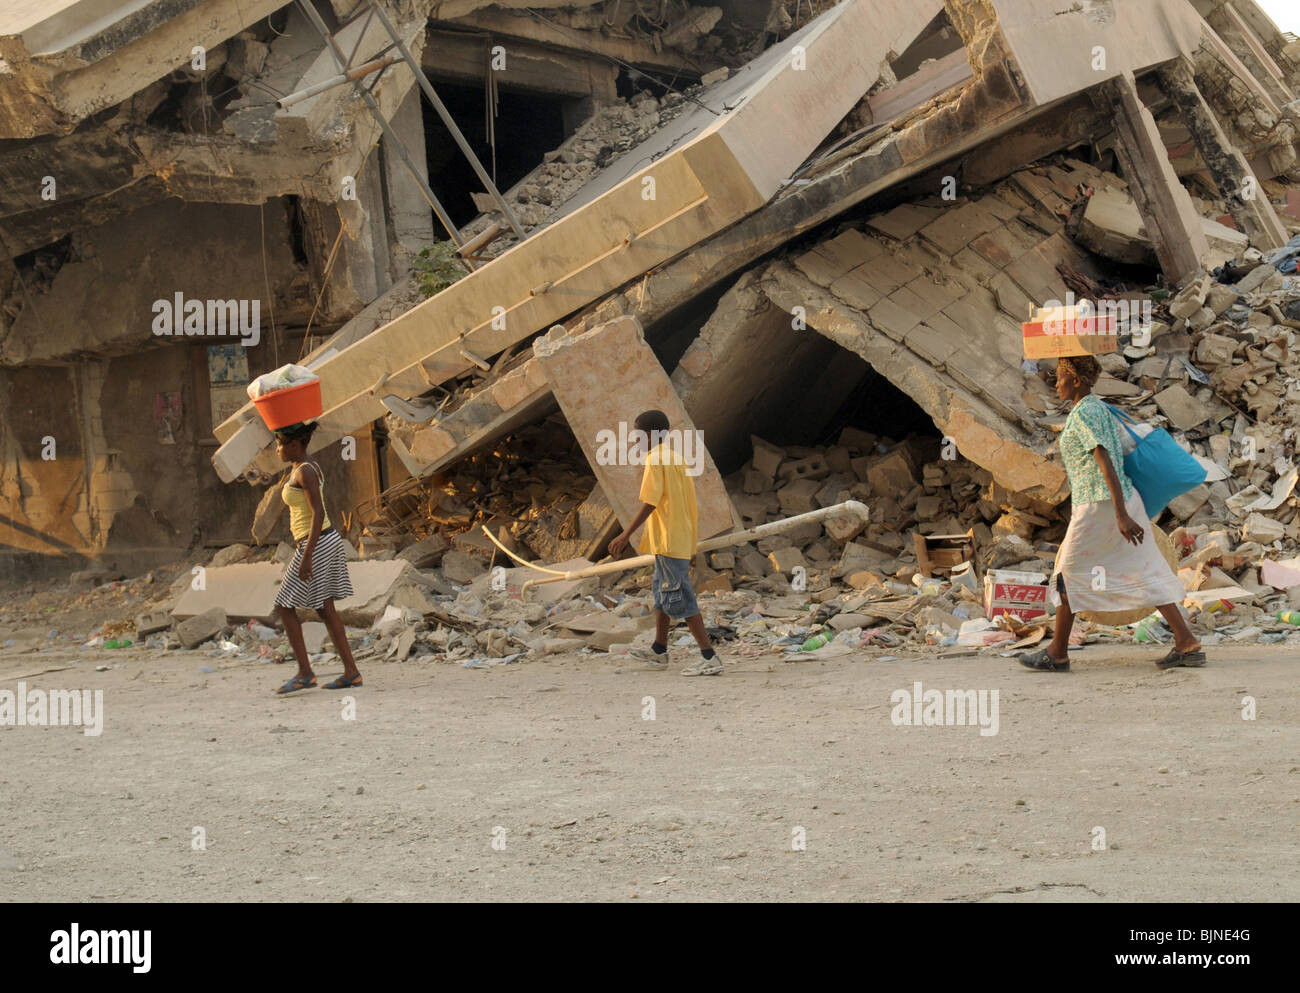 Bâtiments effondrés dans la capitale haïtienne Port-au-Prince après le tremblement de terre de janvier 2010. Banque D'Images